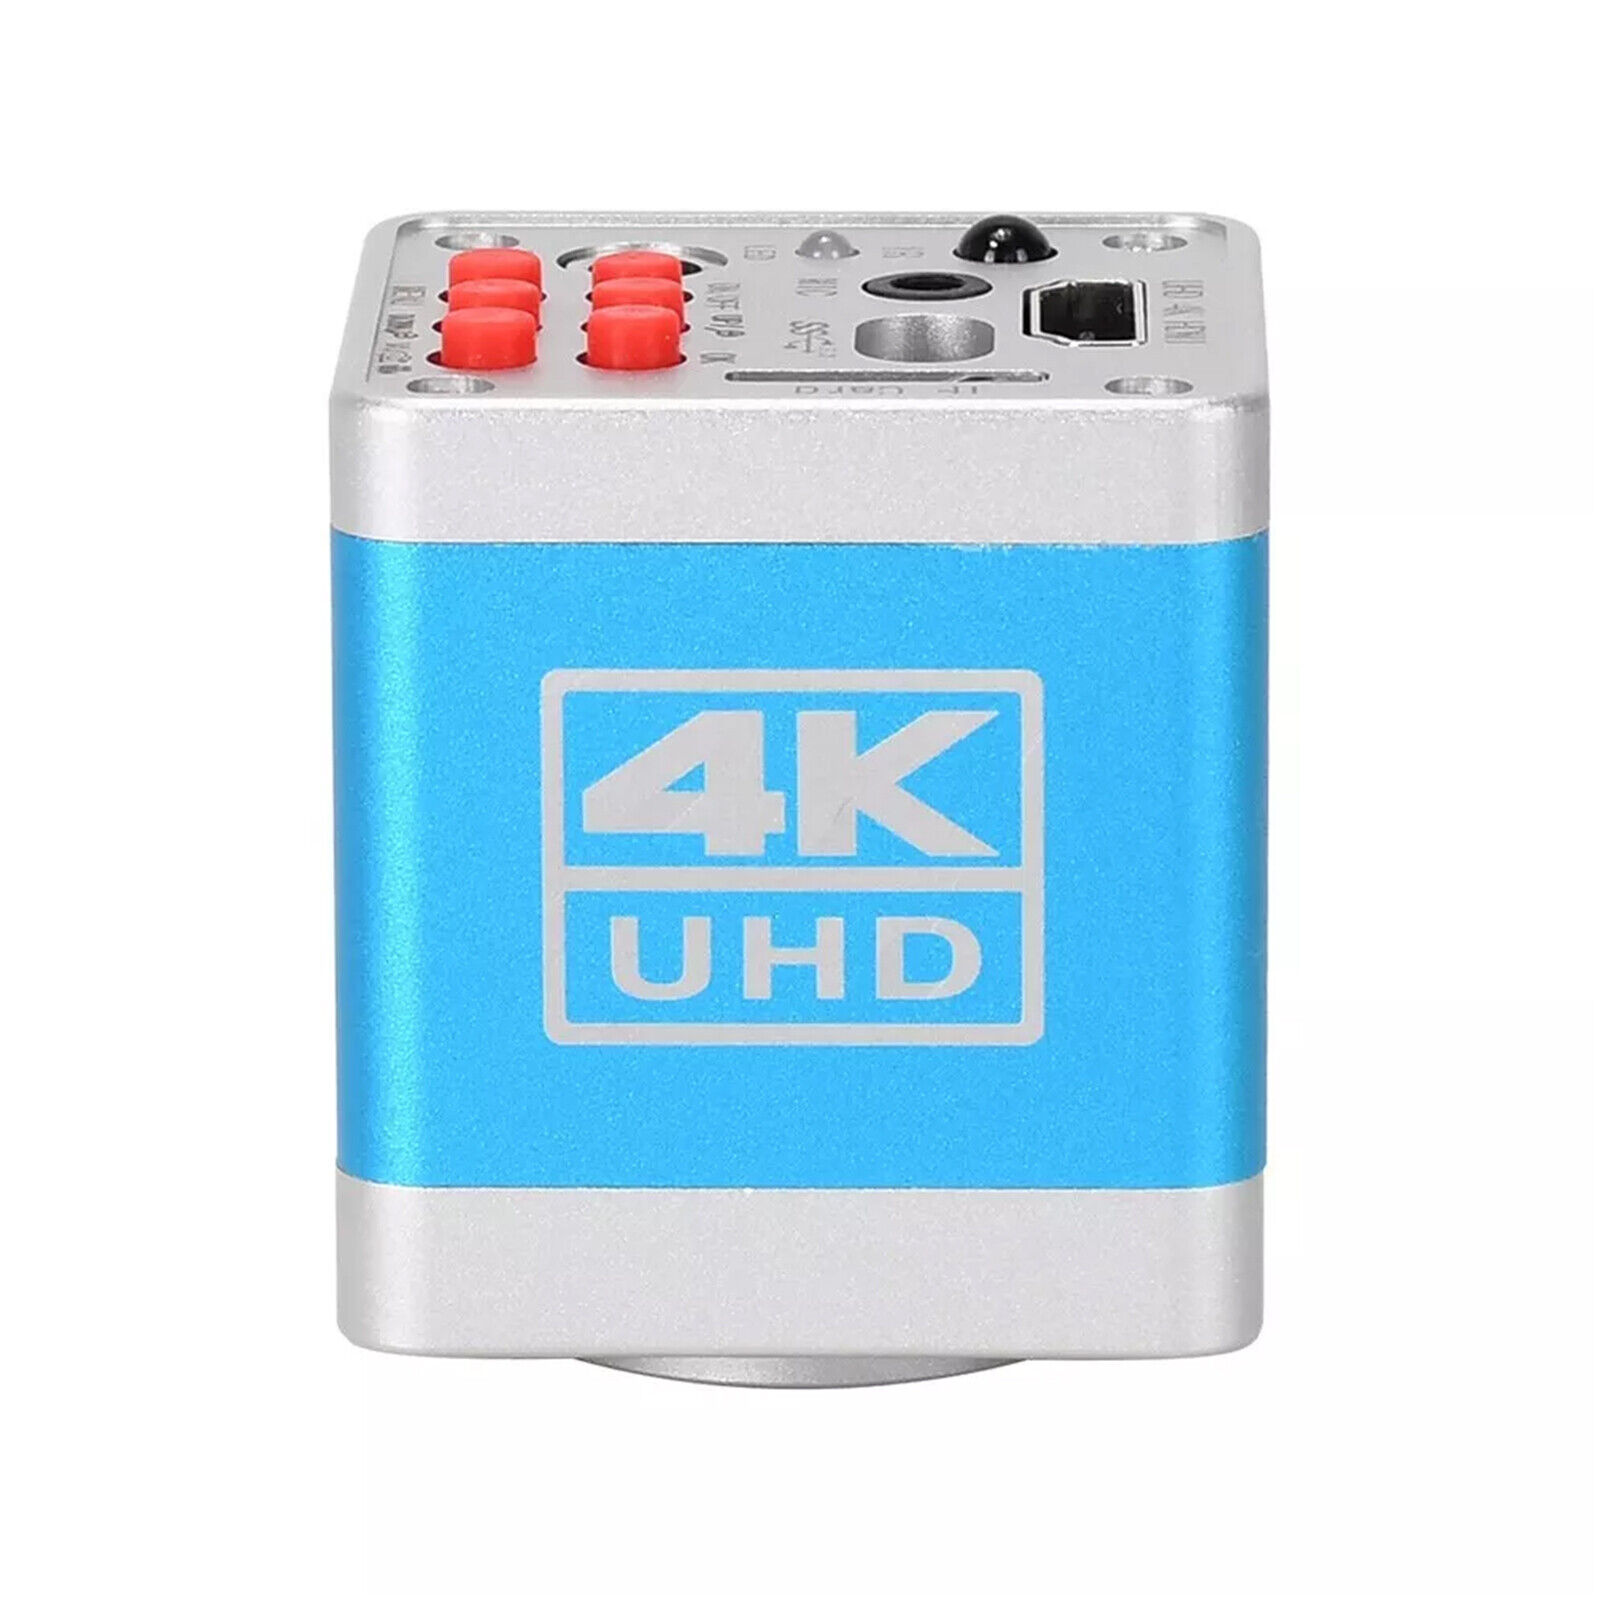 4K UHD Microscope Camera HDMI Camera USB Camera with 32G TF Card HY-6110